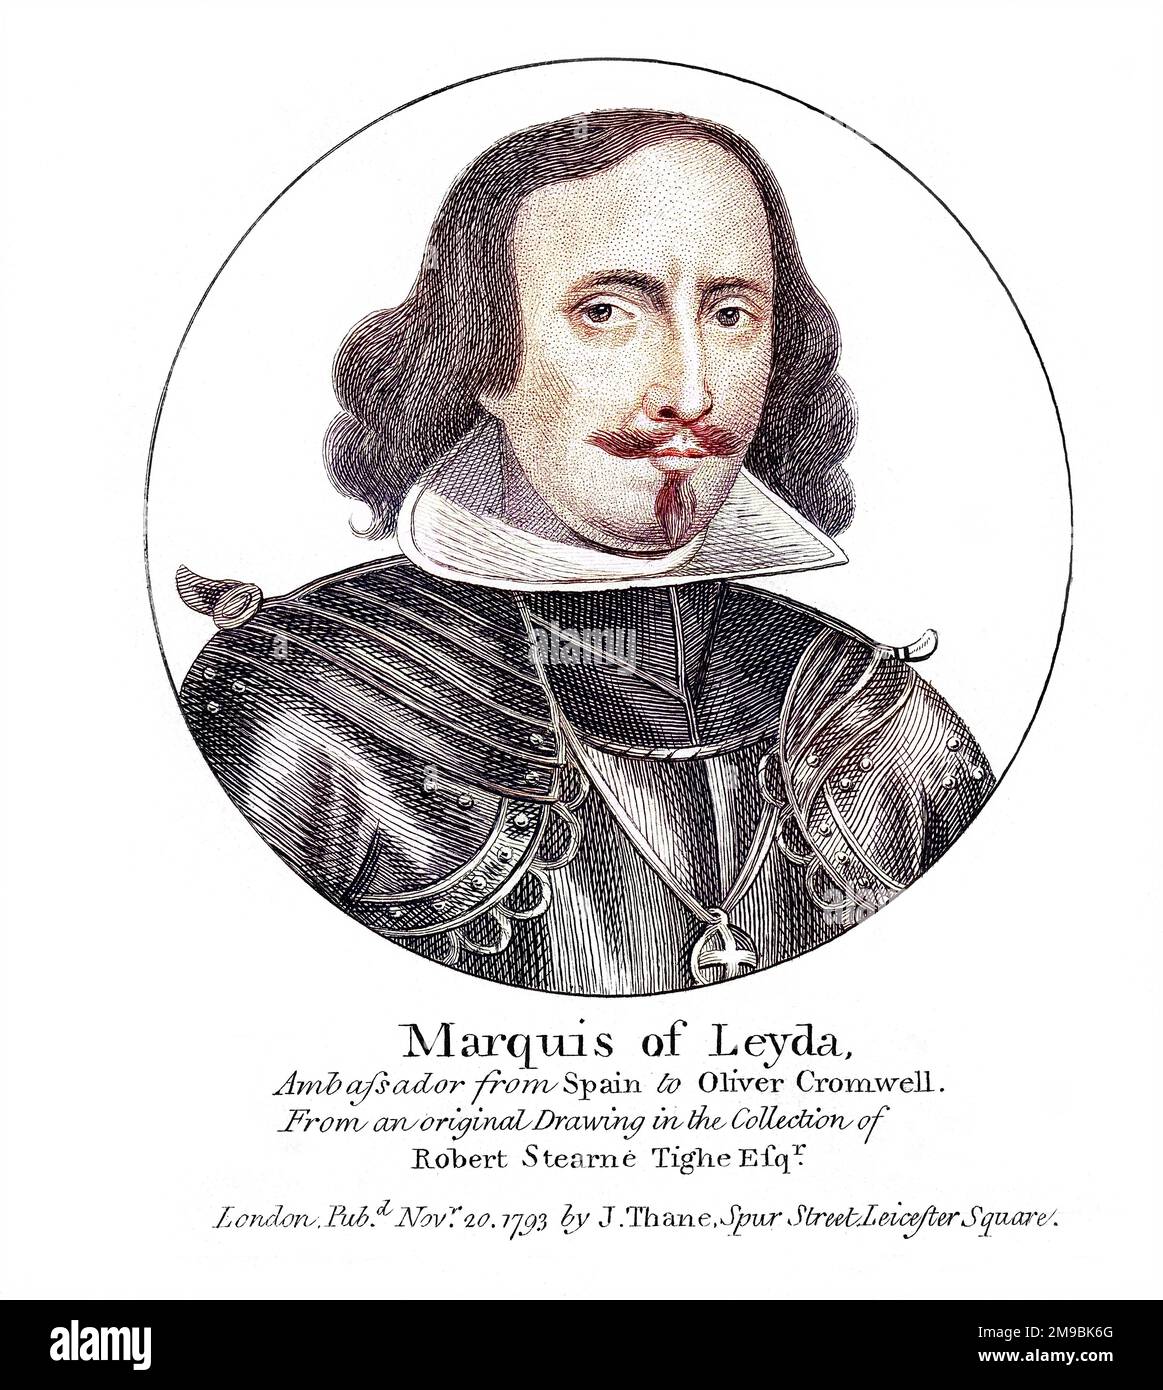 Marques de LEYDA Spanischer Botschafter in England während des Protektorats von Cromwell - ein Job, der jeden Schrott der Diplomatie verlangt hat, den er besaß! Stockfoto